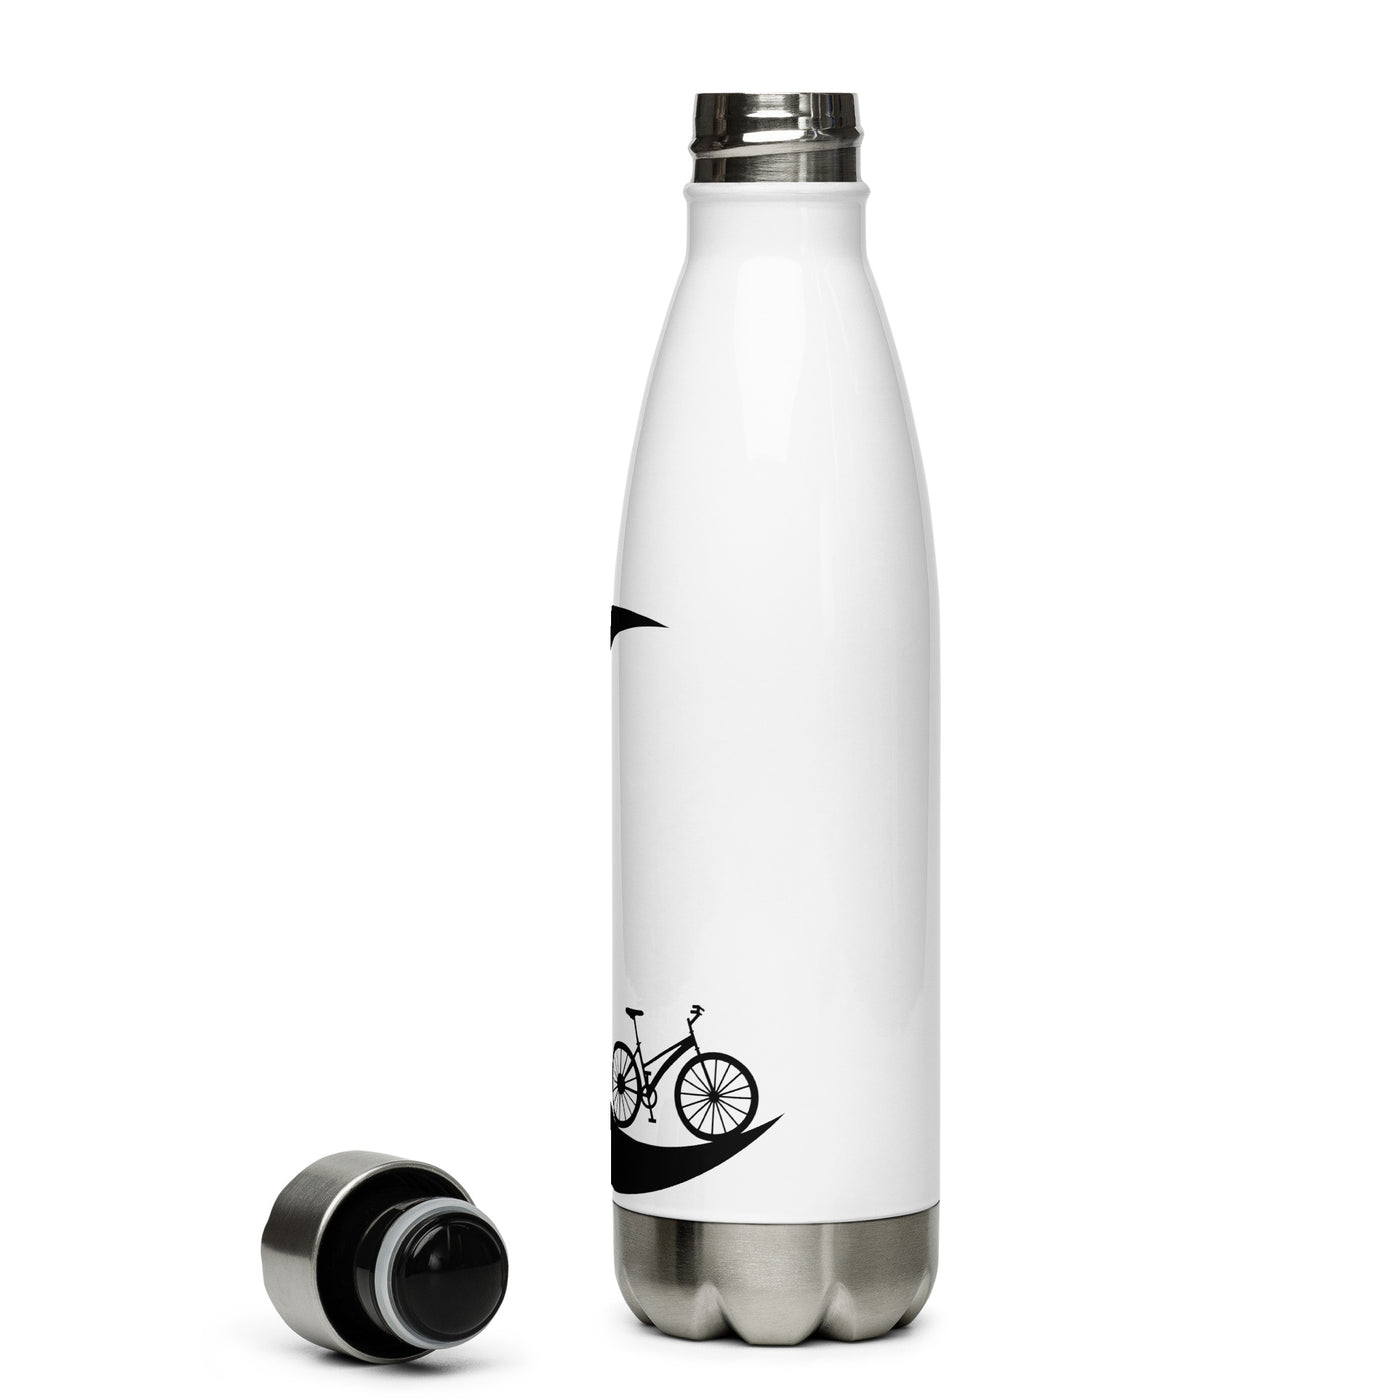 Halbmond - Radfahren - Edelstahl Trinkflasche fahrrad